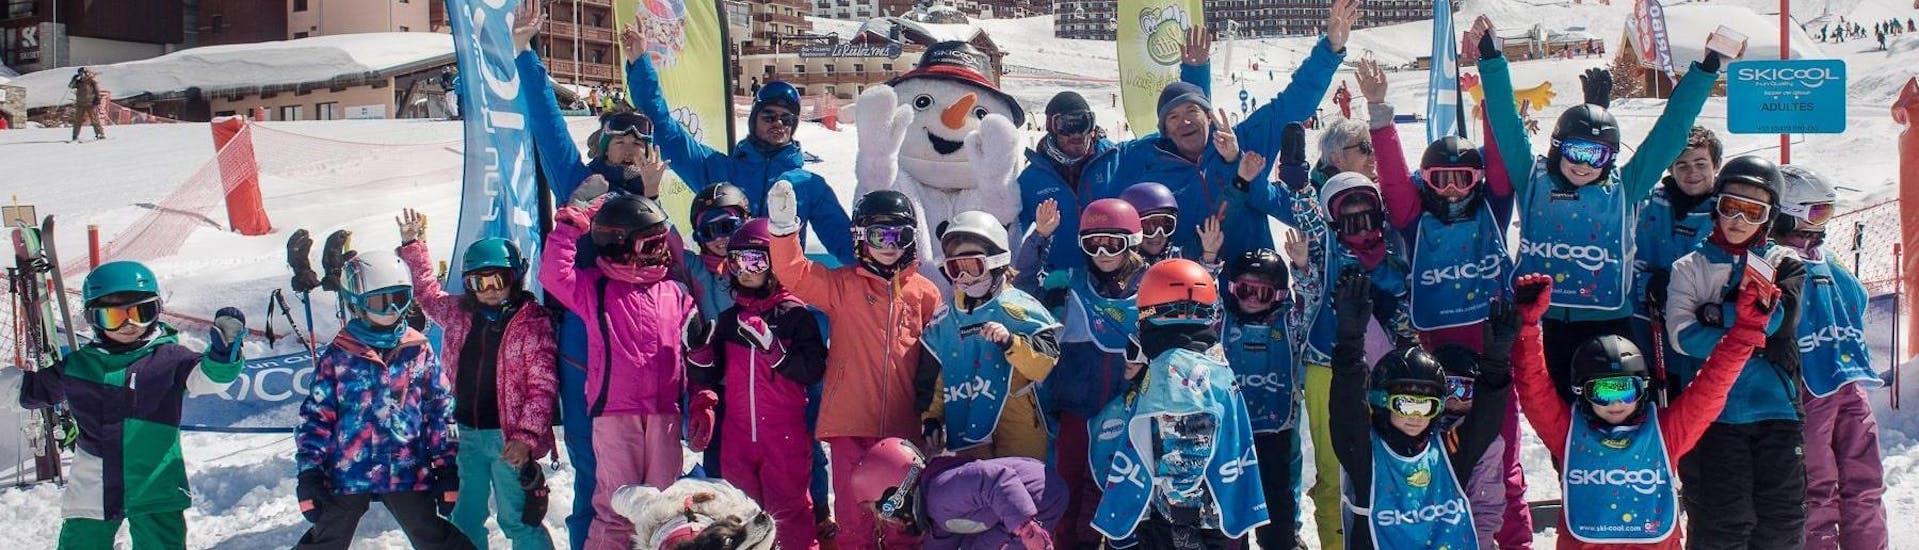 Skilessen voor kinderen (5-12 jaar) - Max 8 per groep.